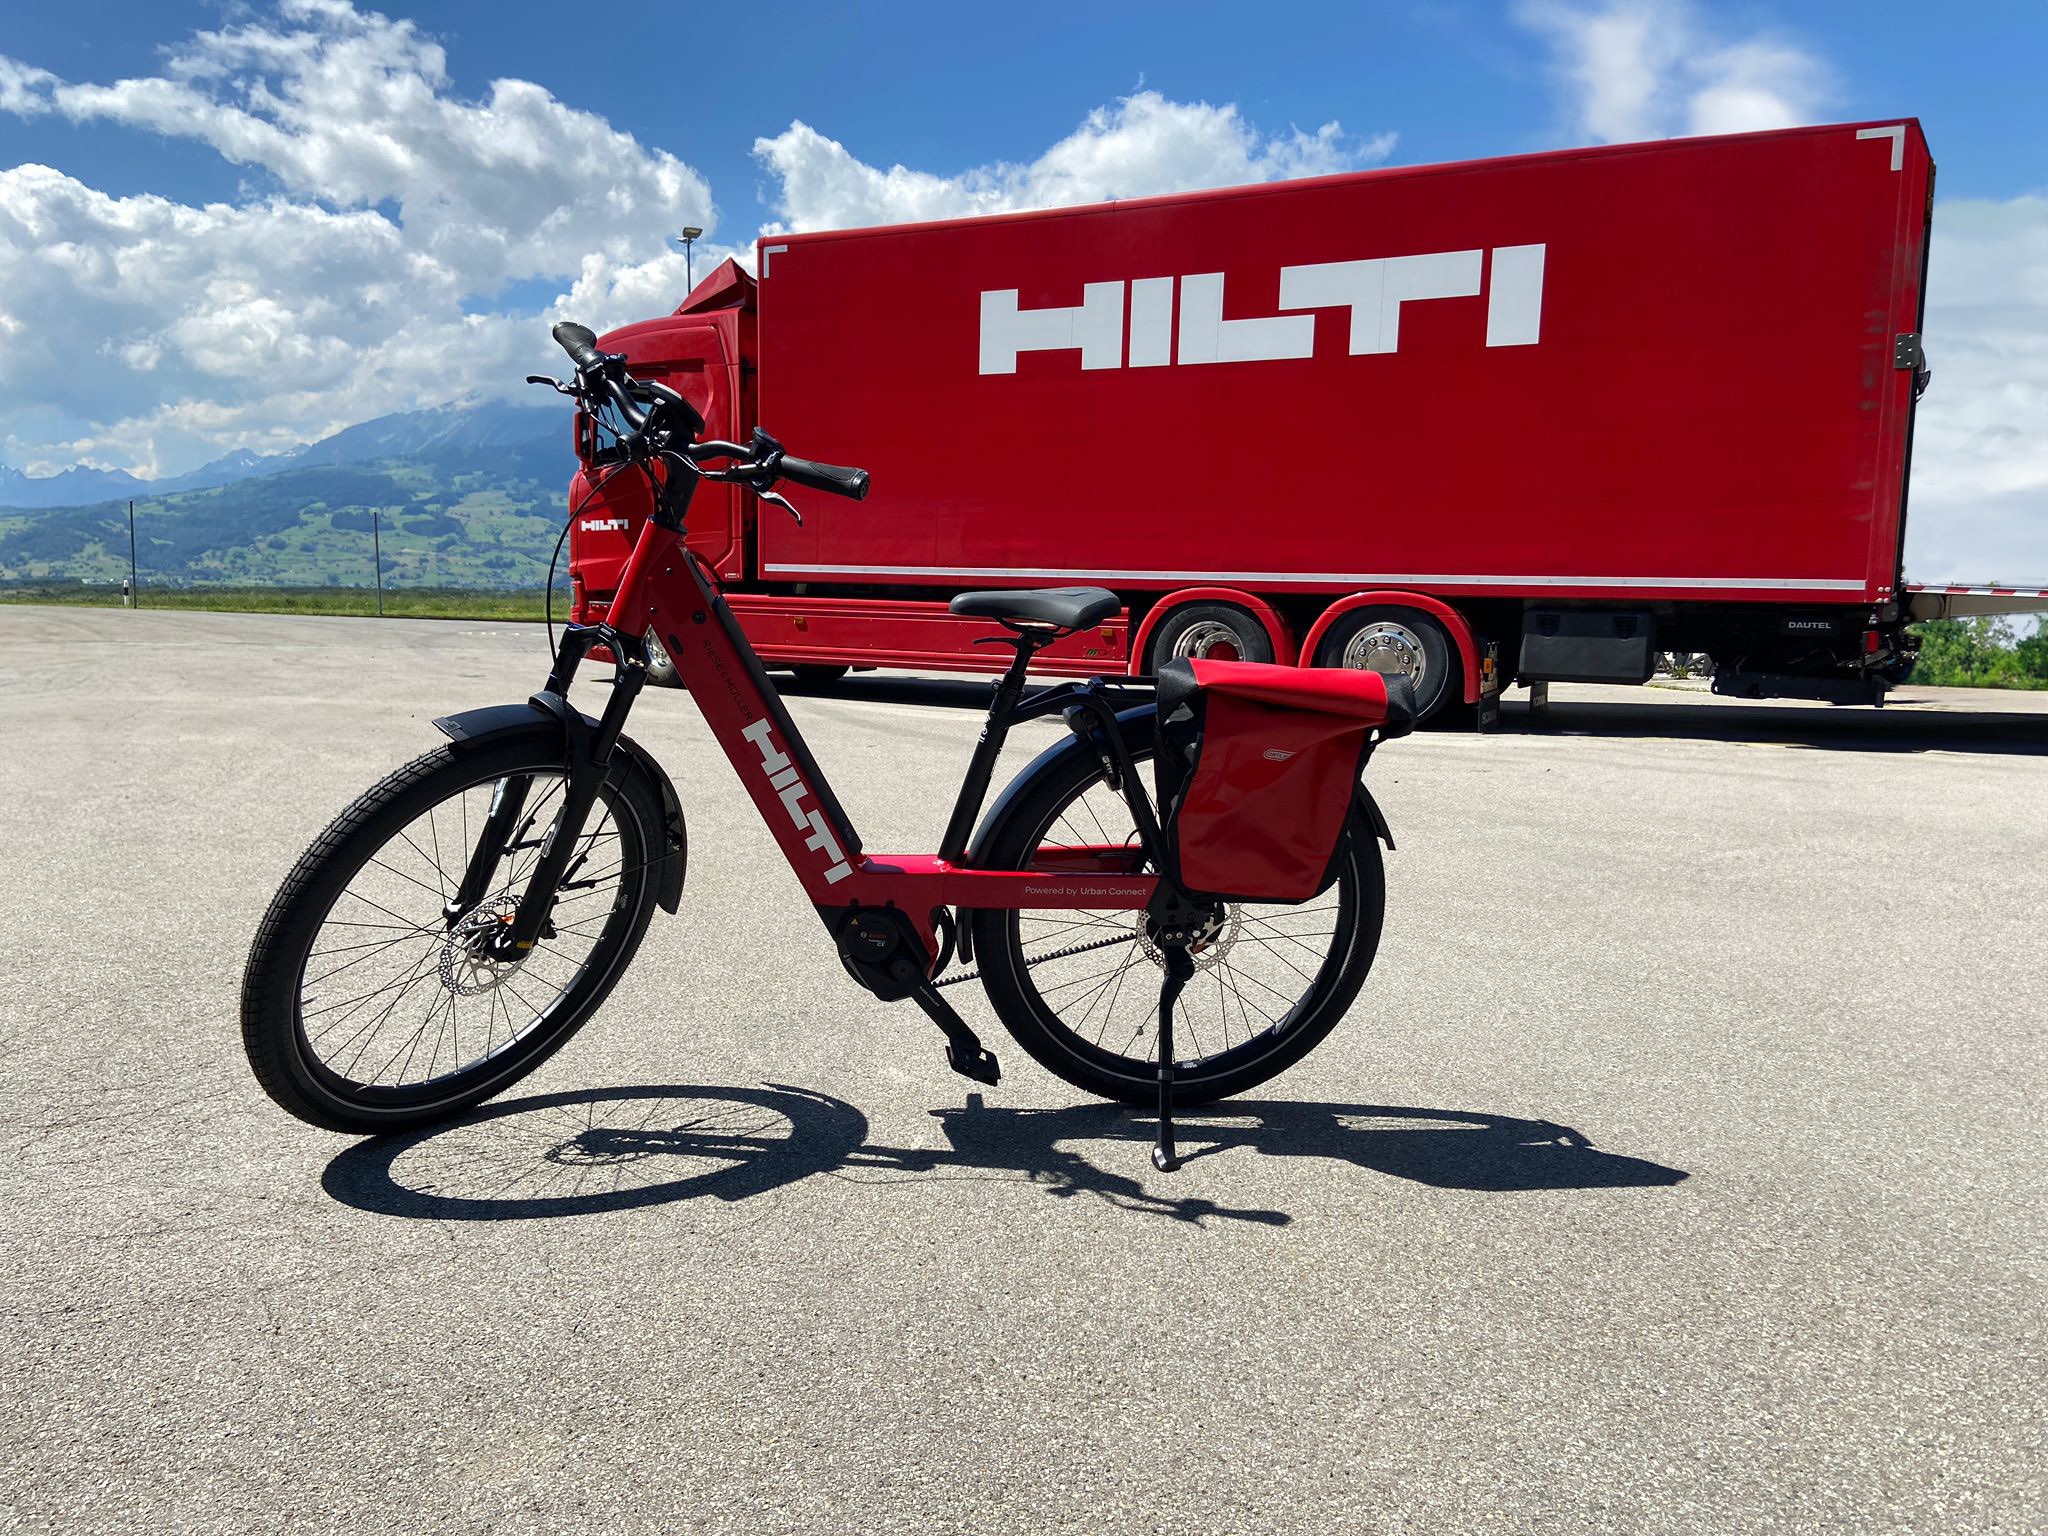 Case Study Spotlight: Commuting Revolution at Hilti